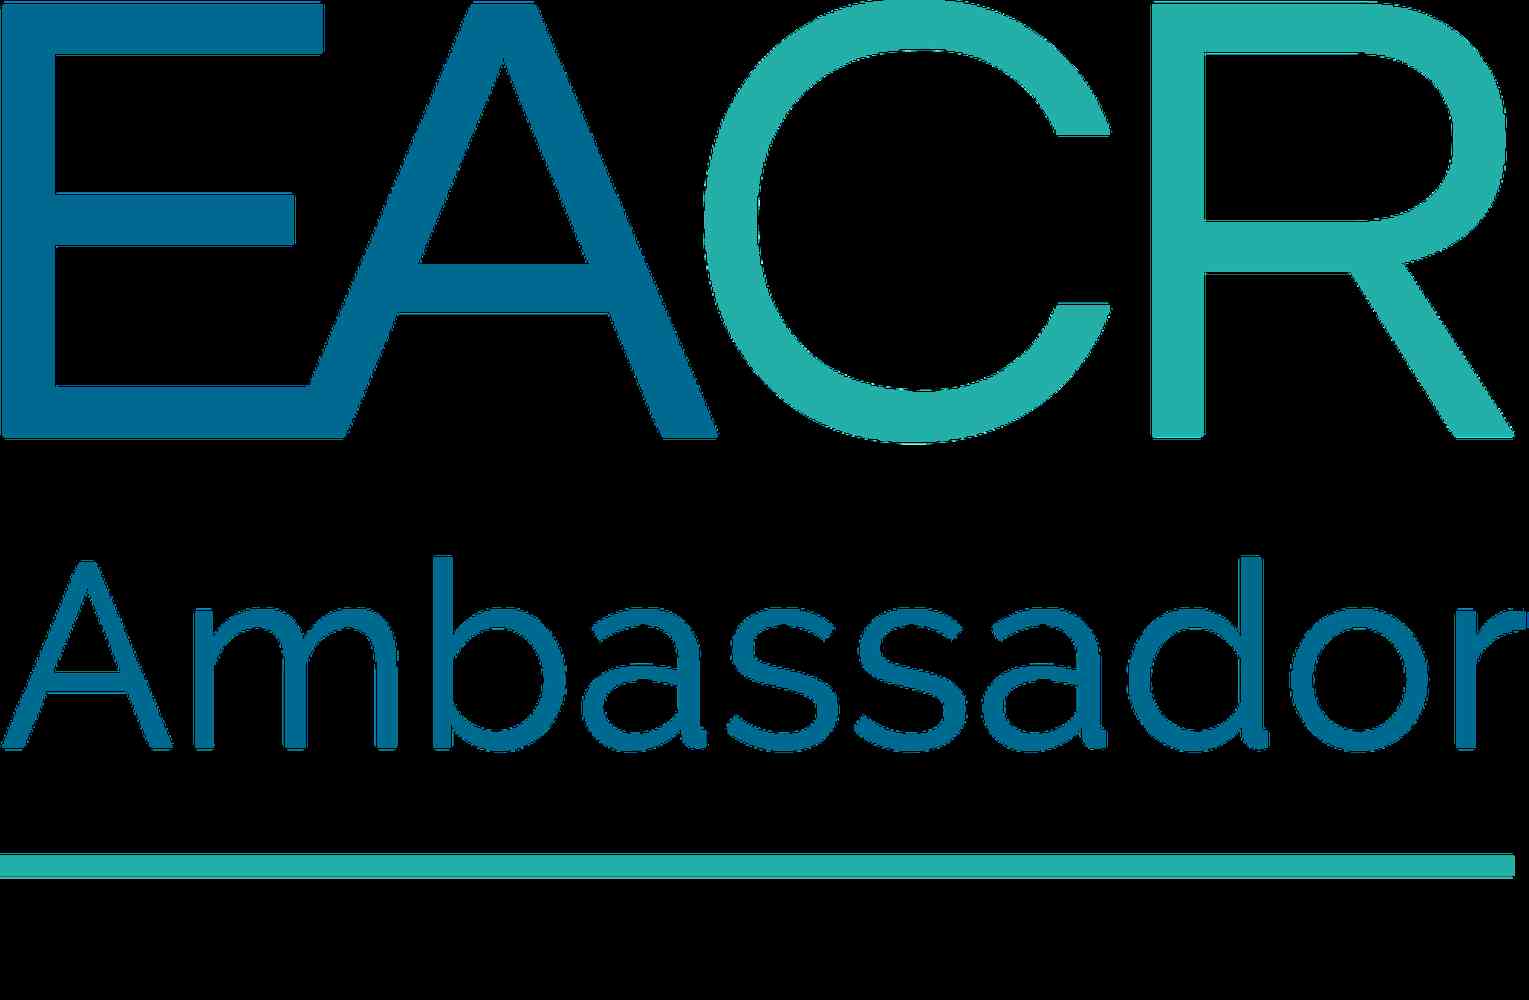 EACR Member & Ambassador - EACR